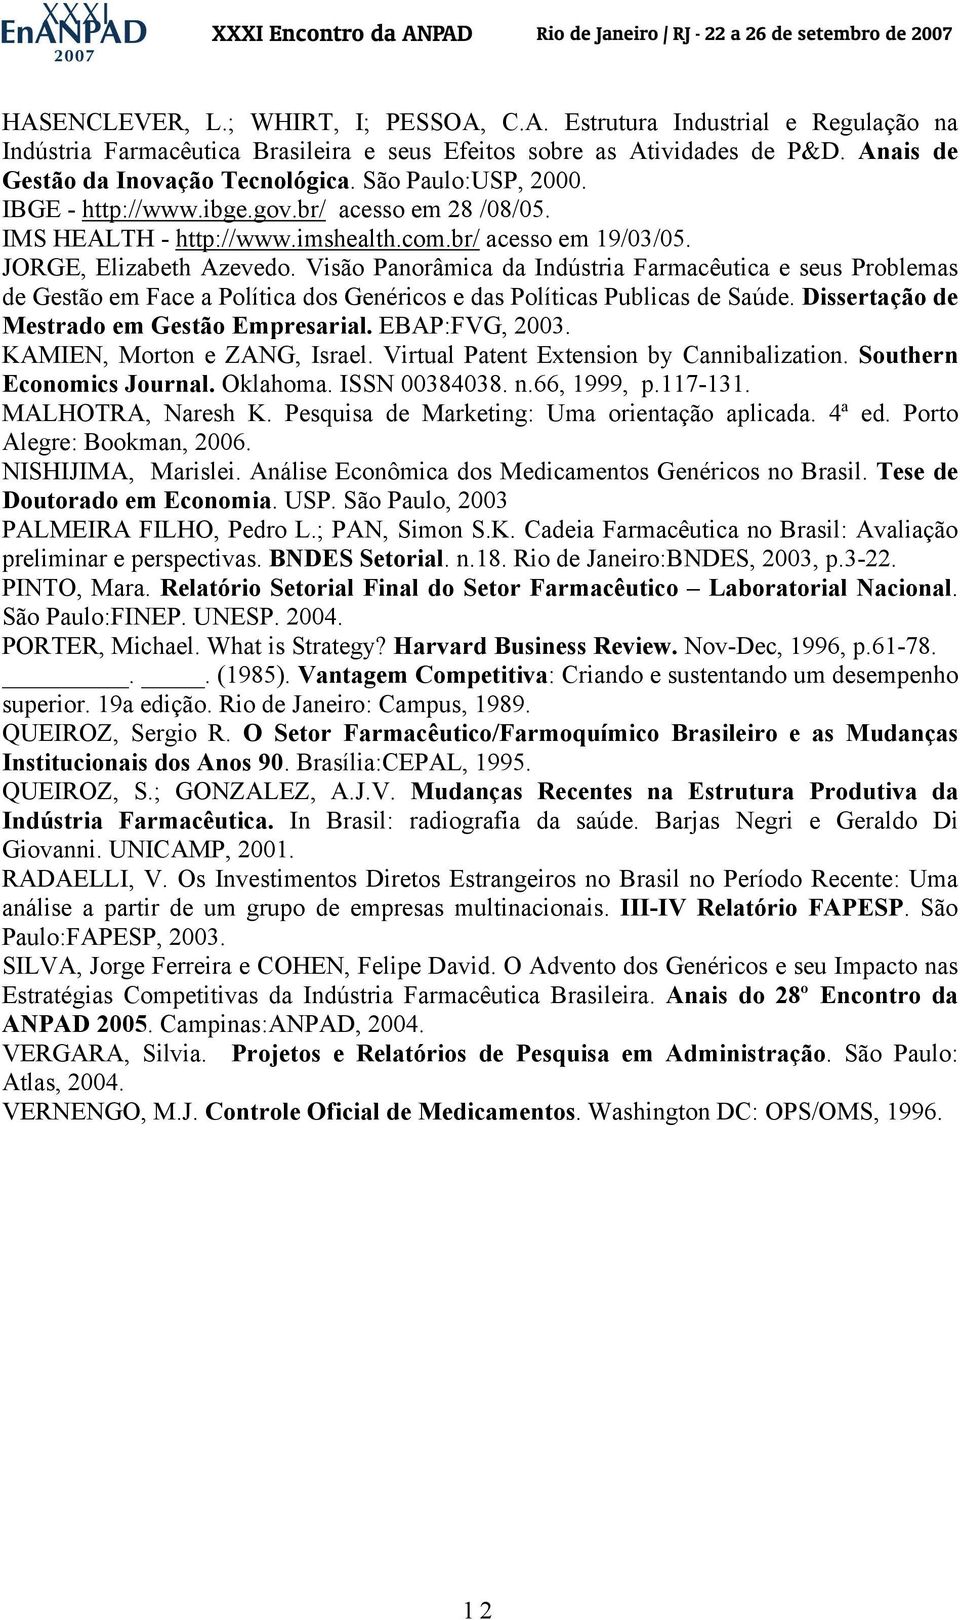 Visão Panorâmica da Indústria Farmacêutica e seus Problemas de Gestão em Face a Política dos Genéricos e das Políticas Publicas de Saúde. Dissertação de Mestrado em Gestão Empresarial. EBAP:FVG, 2003.